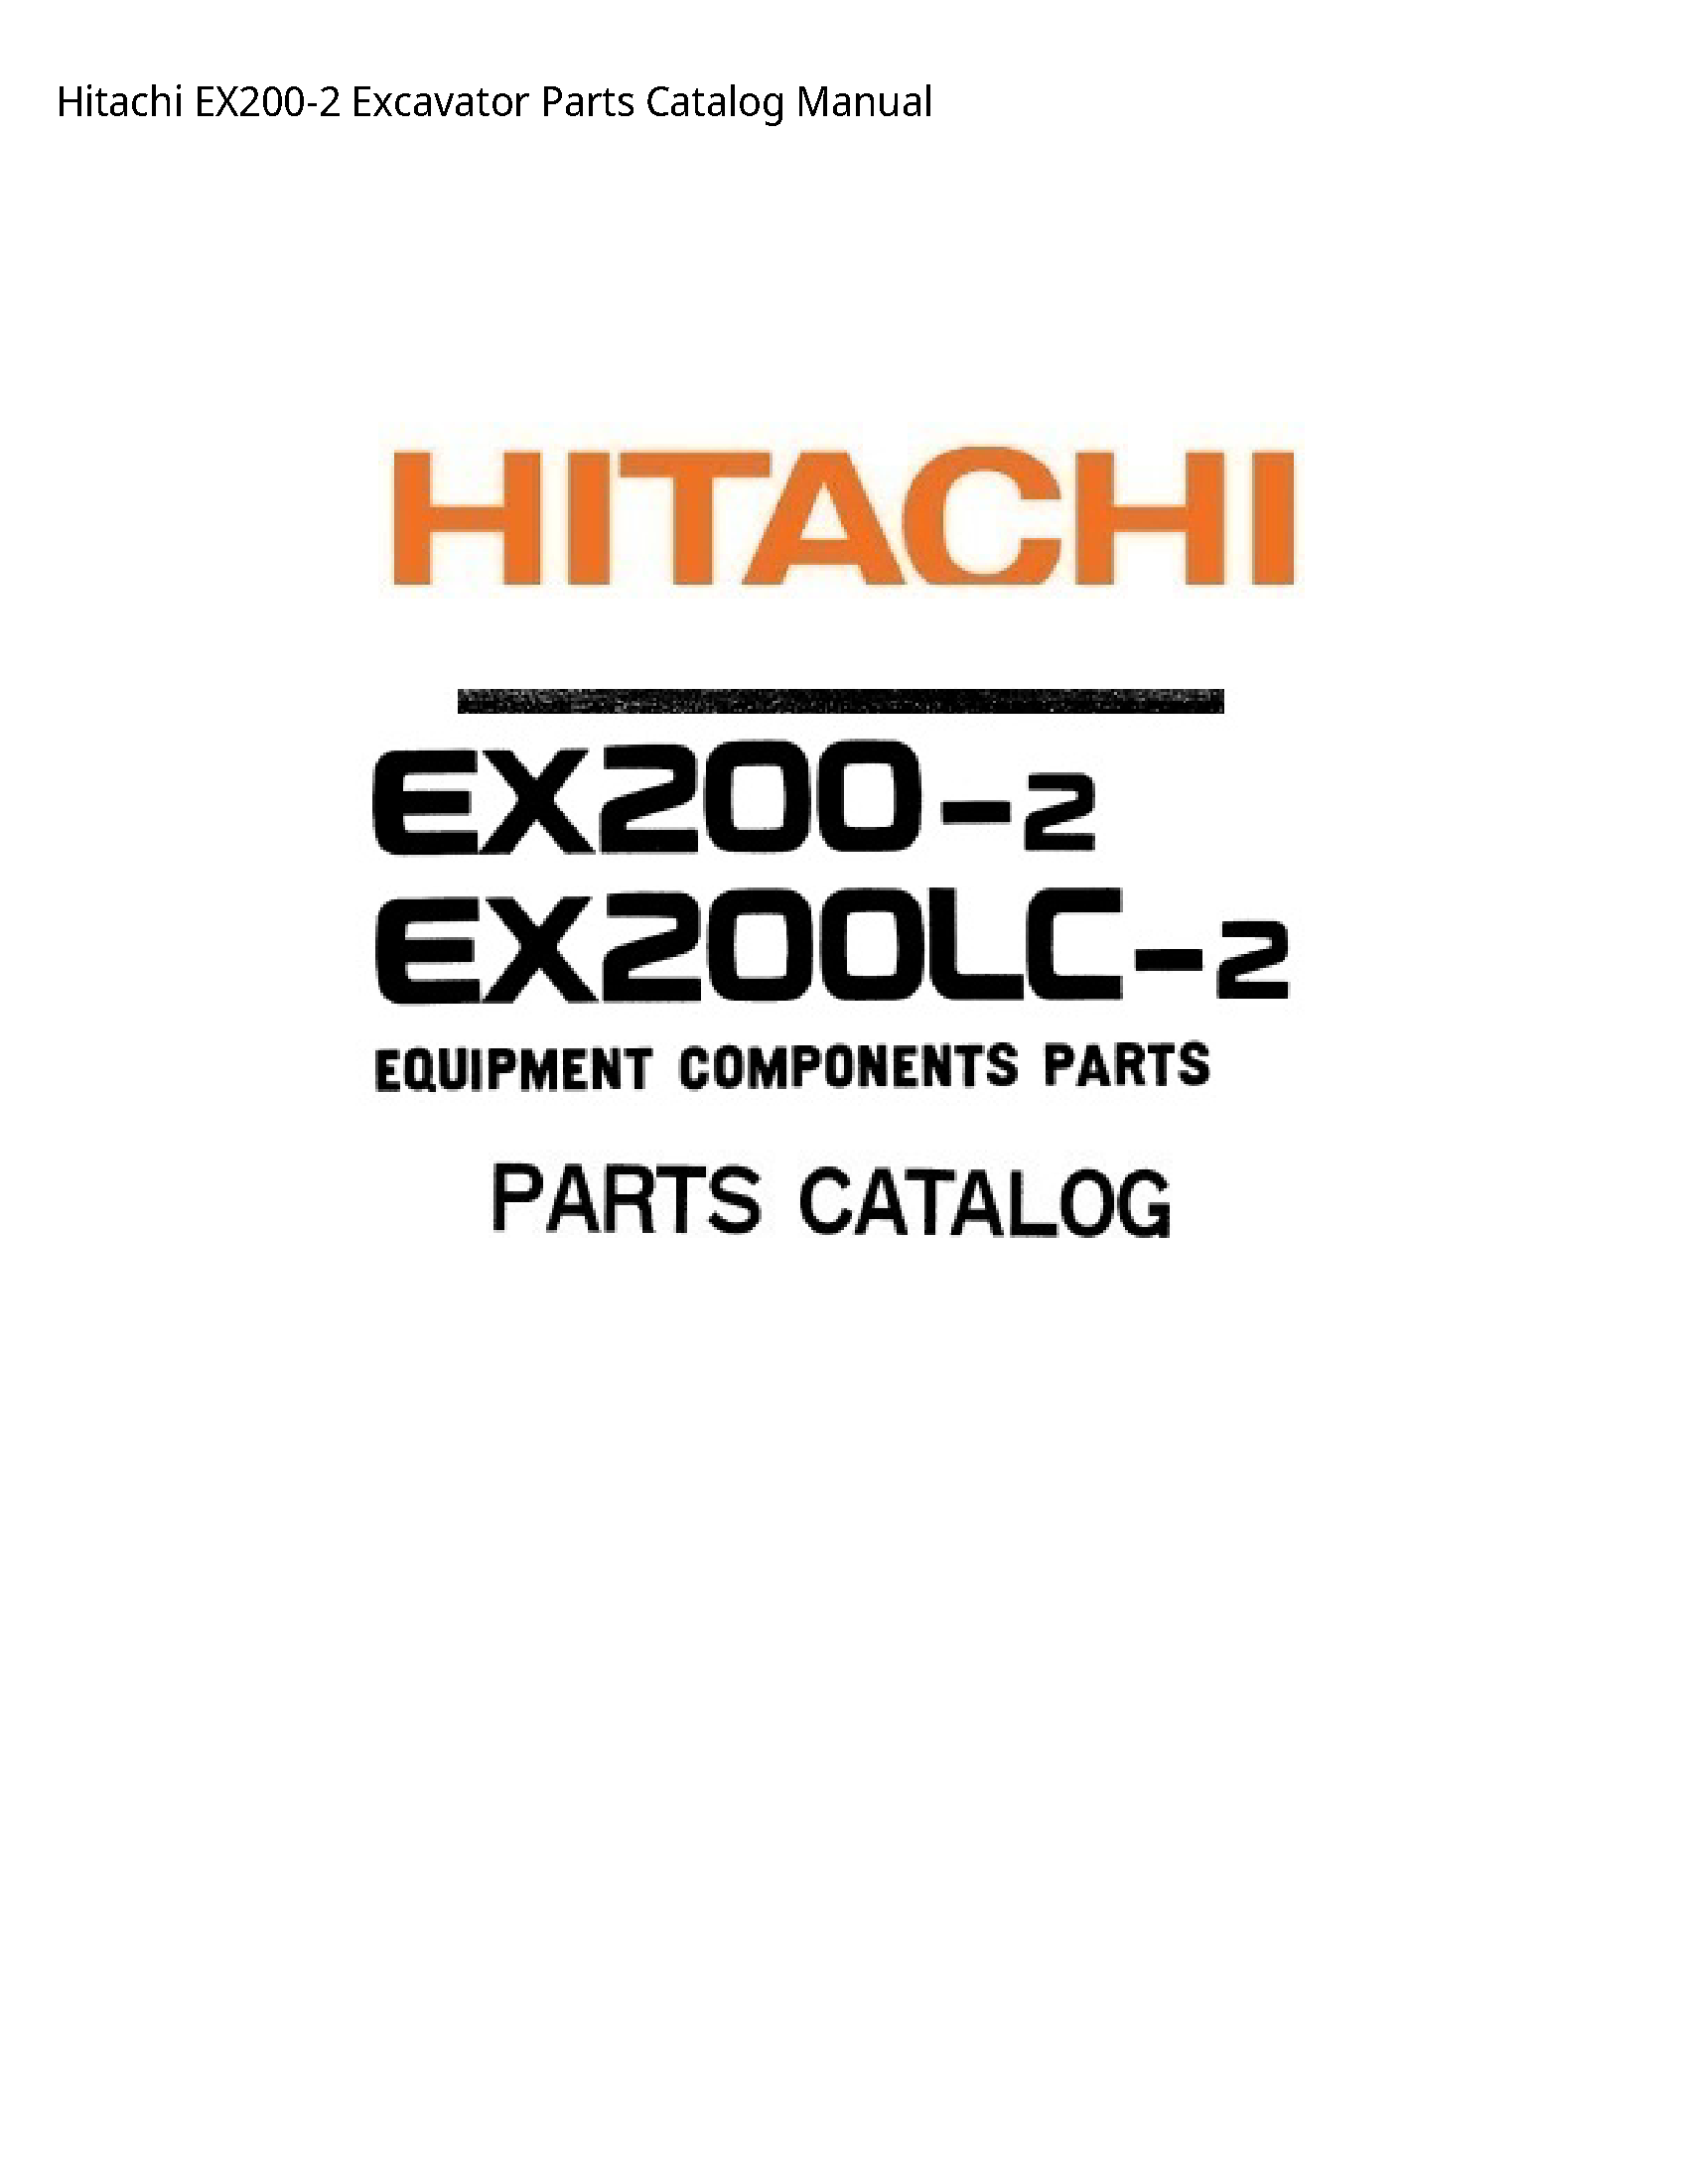 Hitachi EX200-2 Excavator Parts Catalog manual